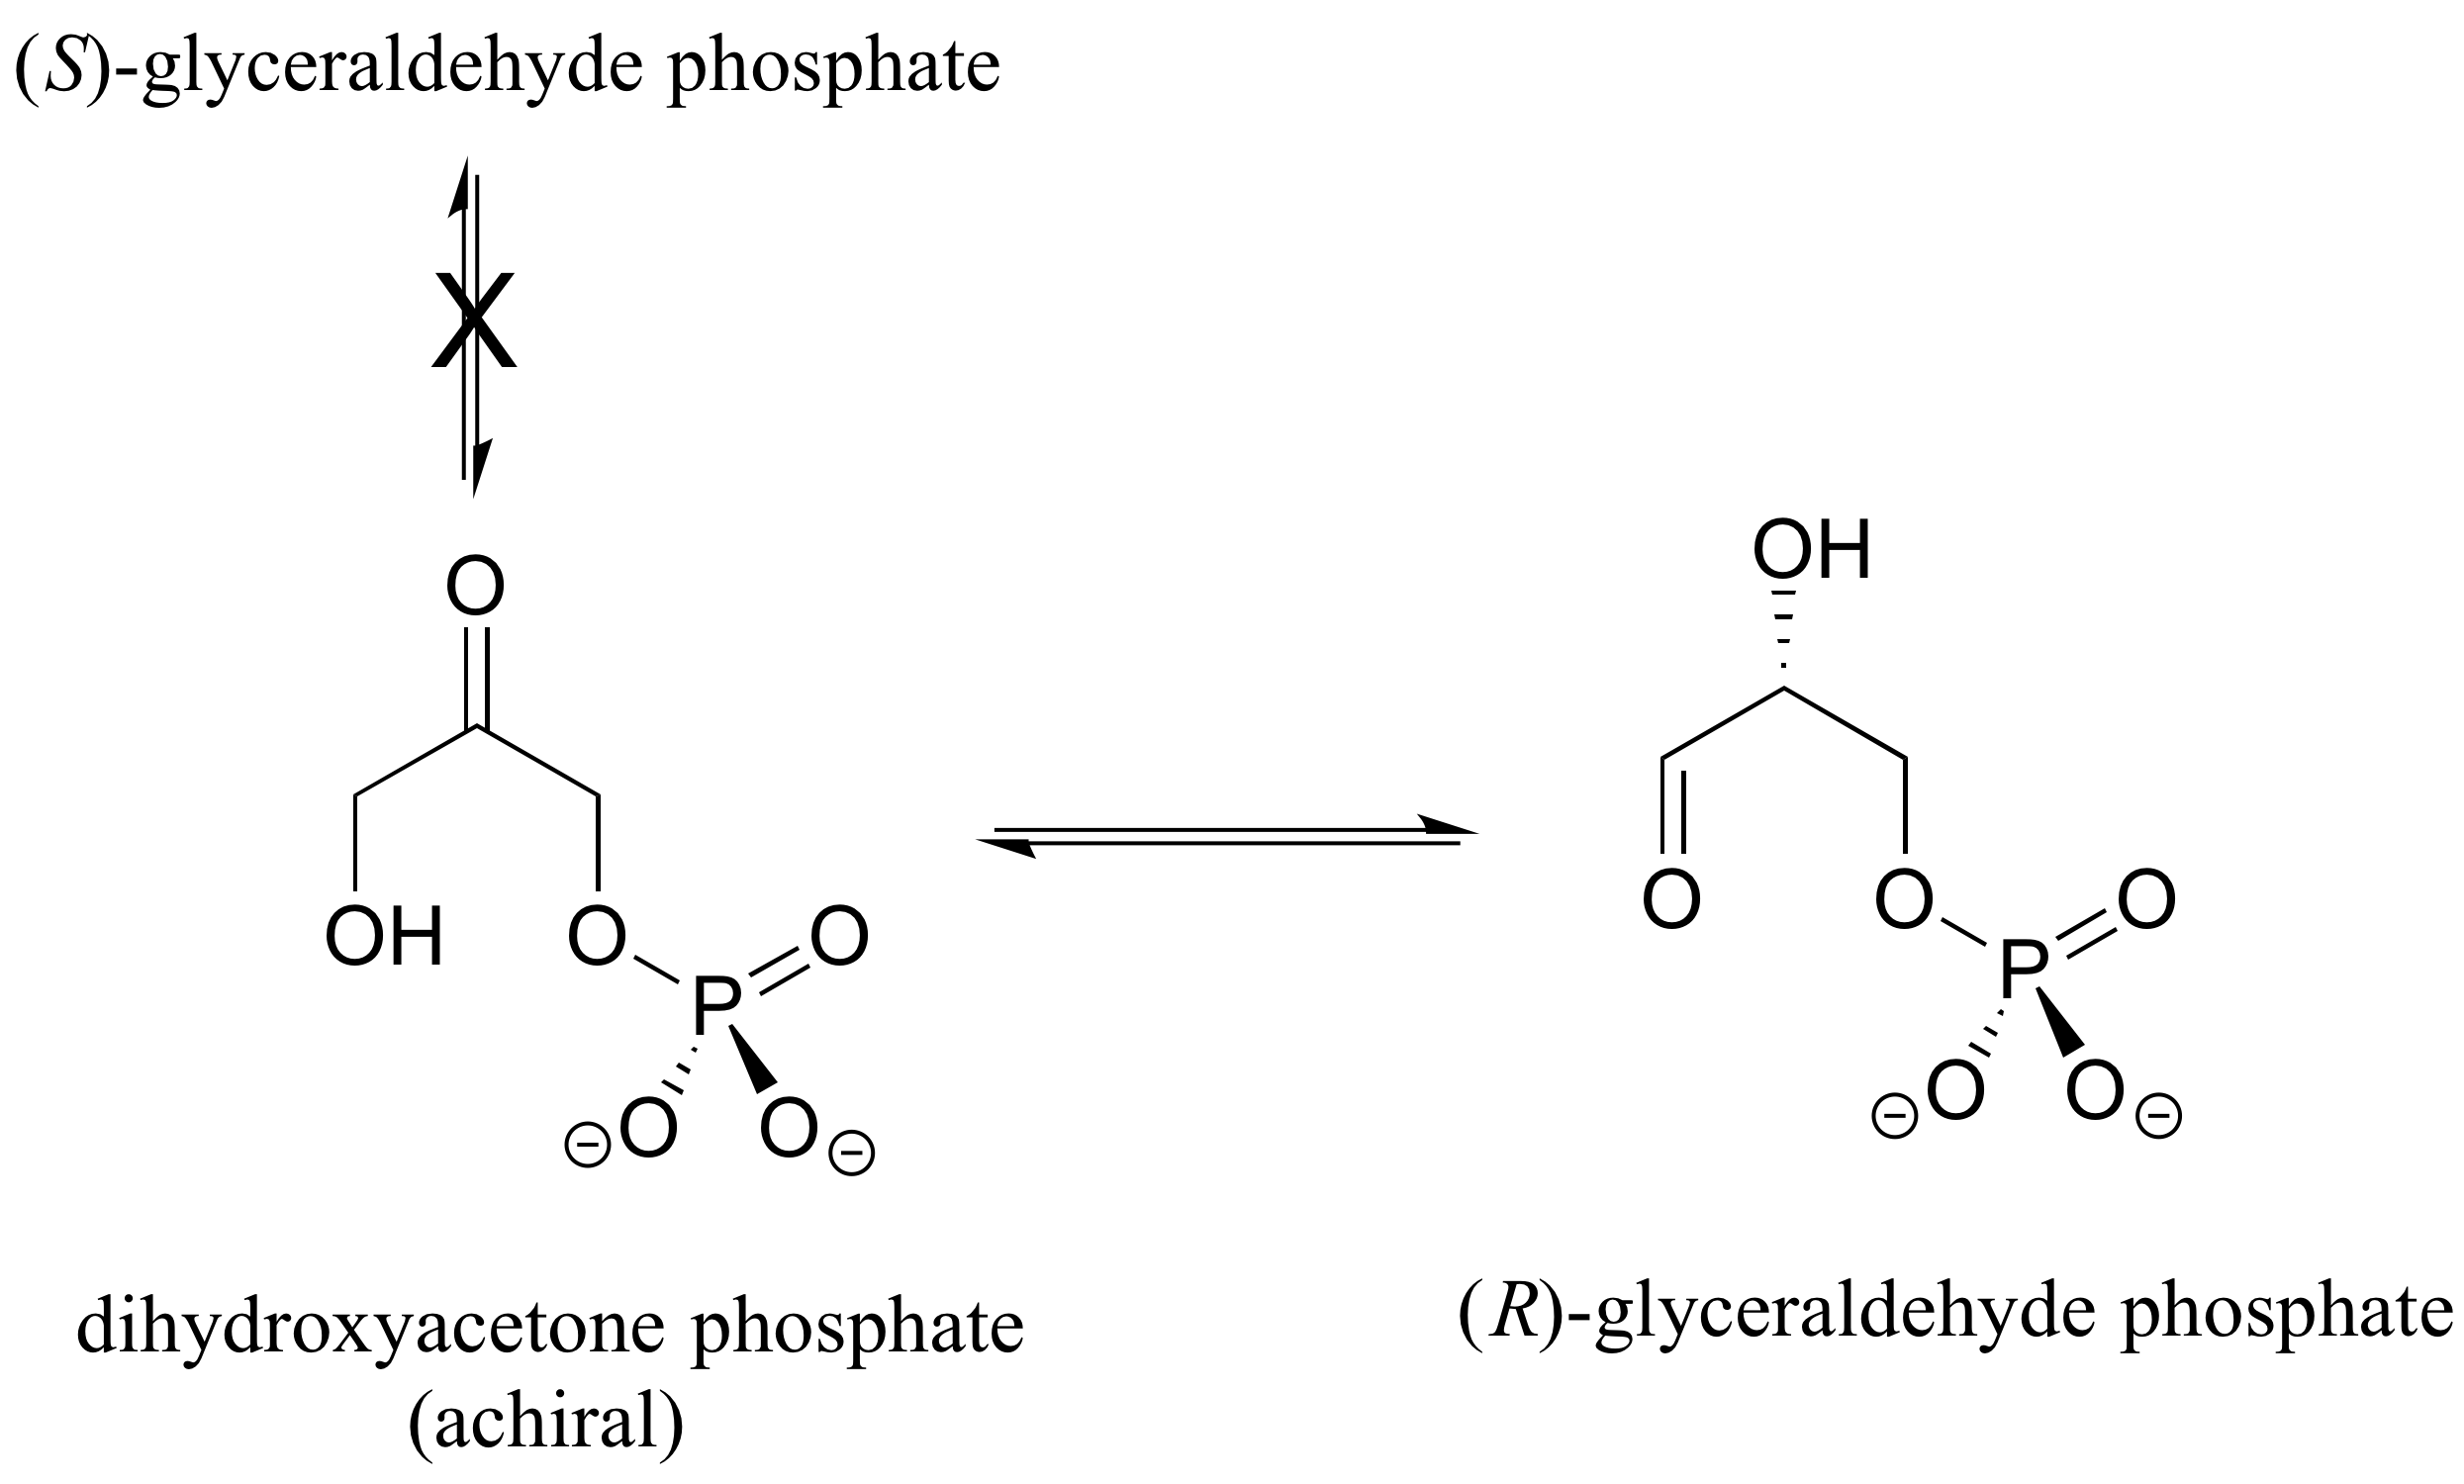 Fosfato de (S) -gliceraldehído no en equilibrio con fosfato de dihidroxiacetona (aquiral). Fosfato de dihidroxiacetona en equilibrio con la molécula de fosfato de (R) -gliceraldehído.